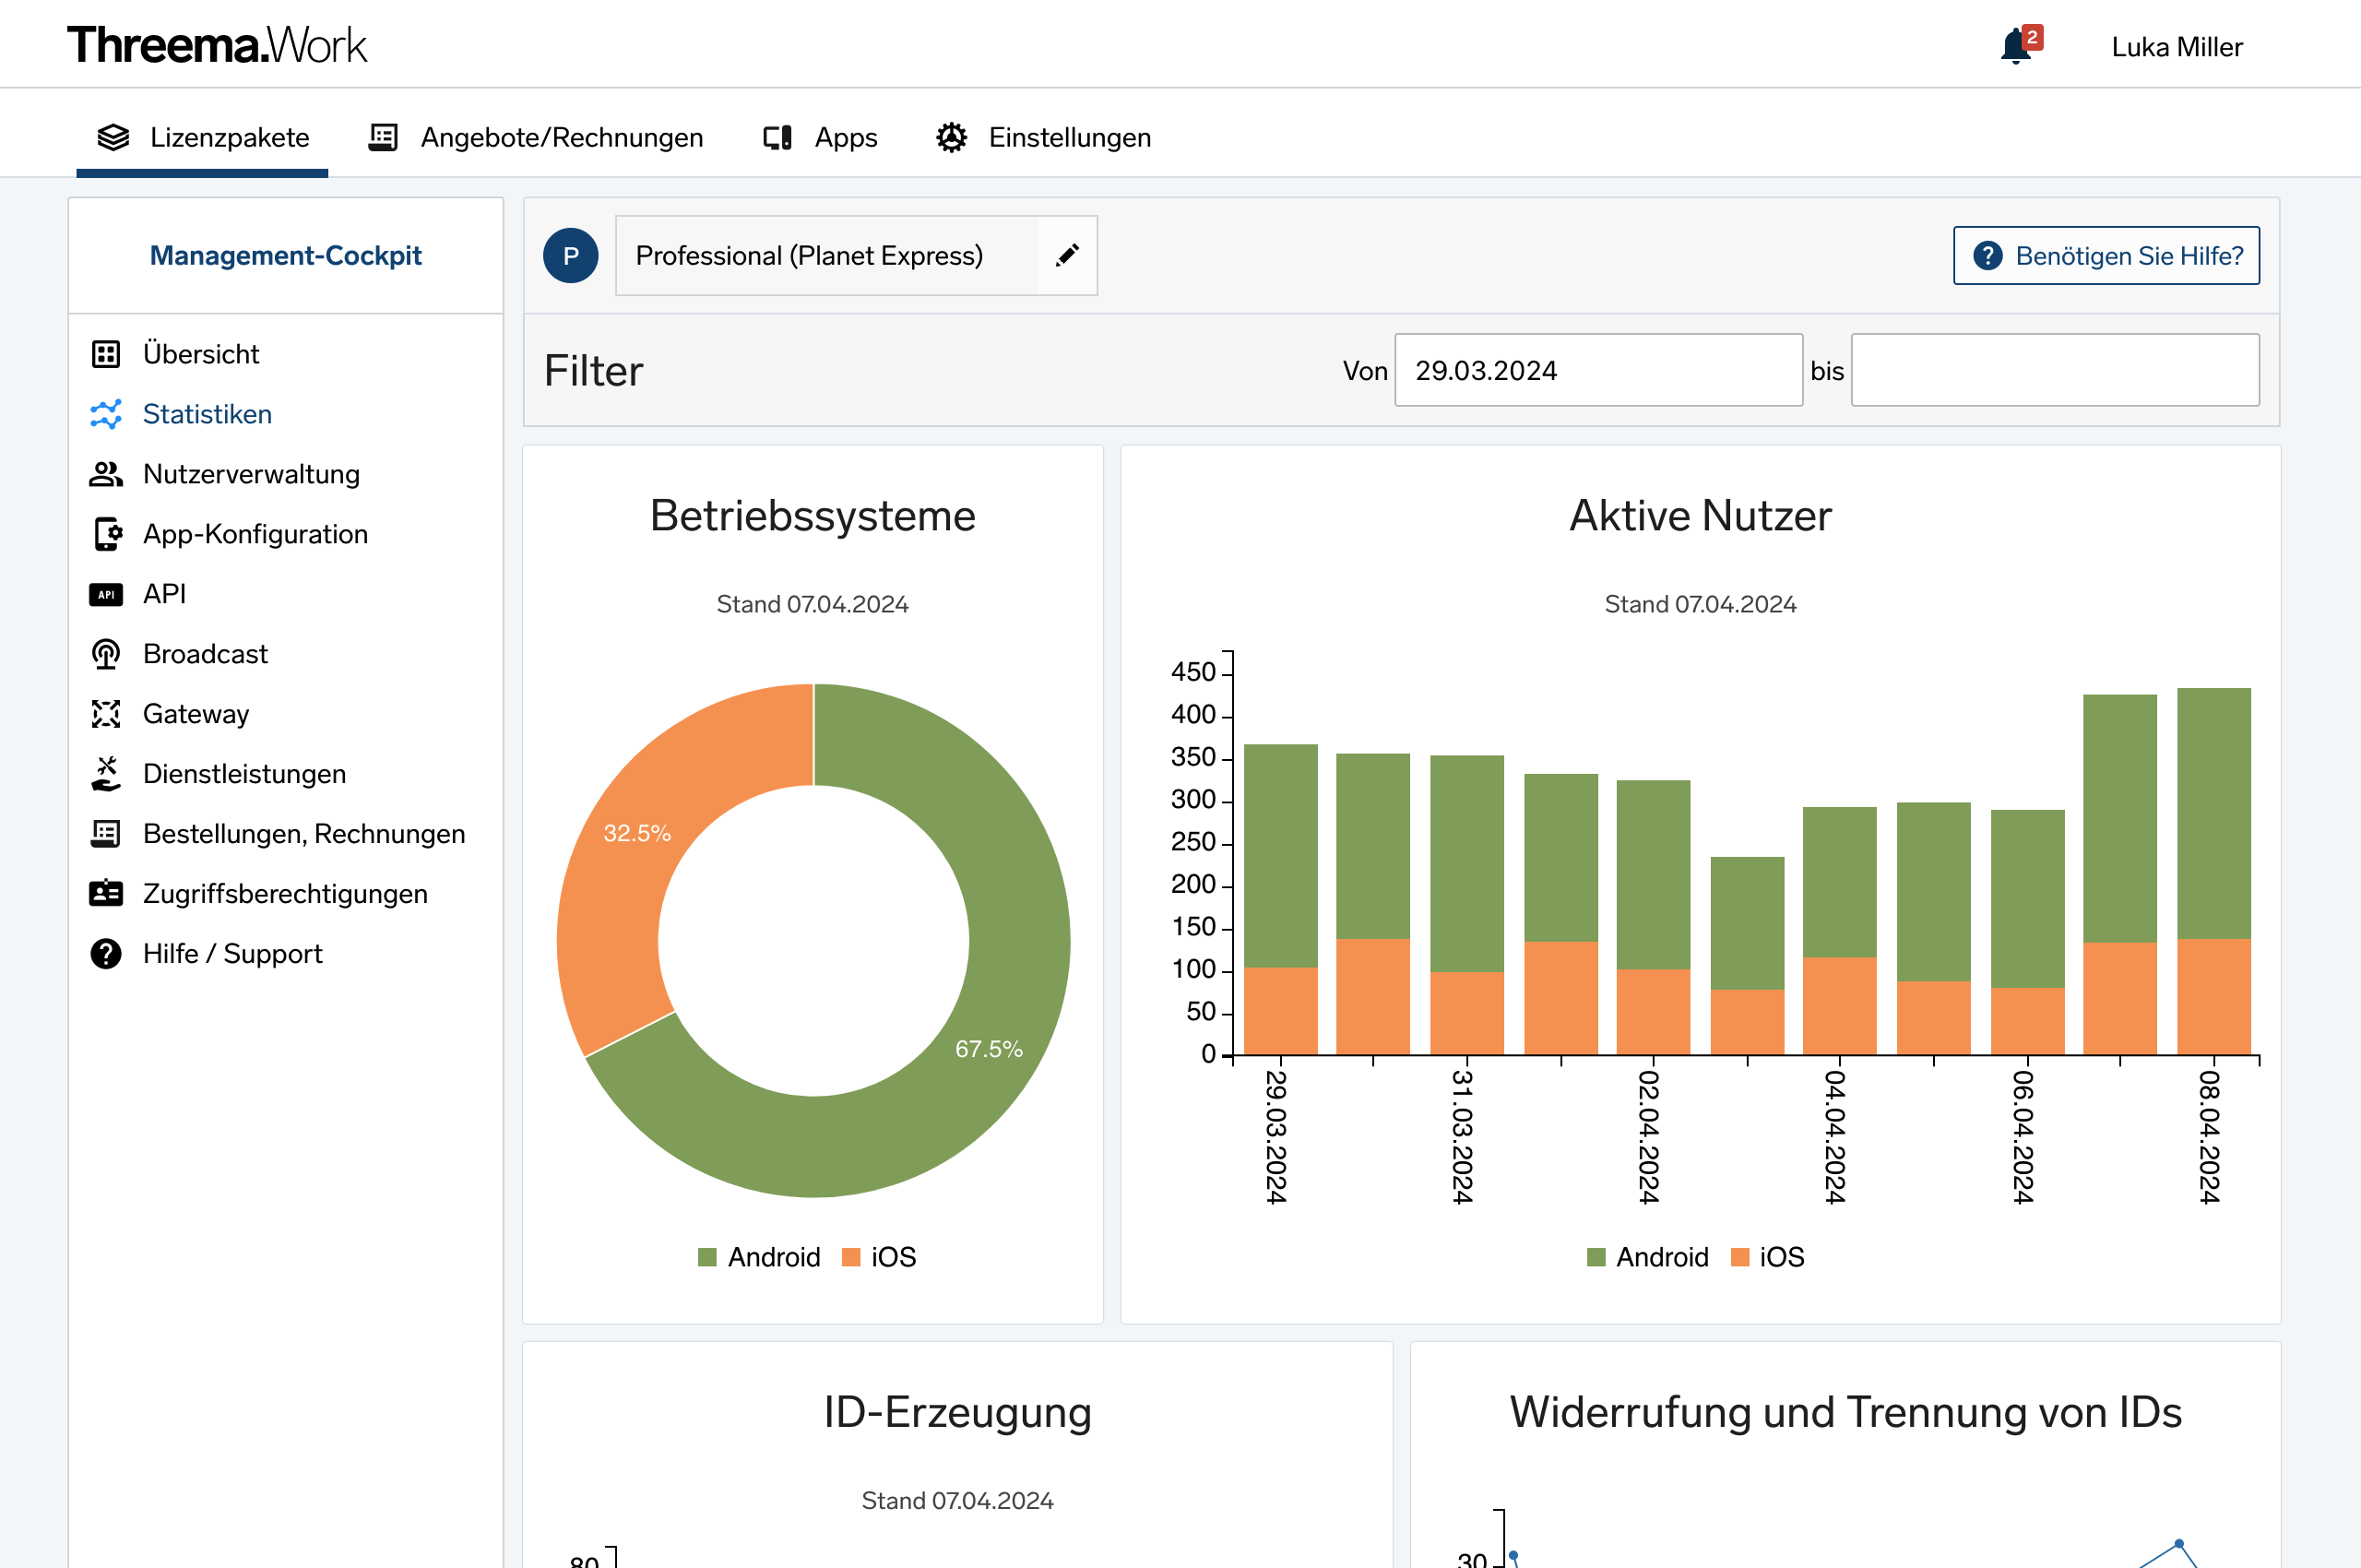 Business-Messenger Threema Work – Statistiken im Management-Cockpit